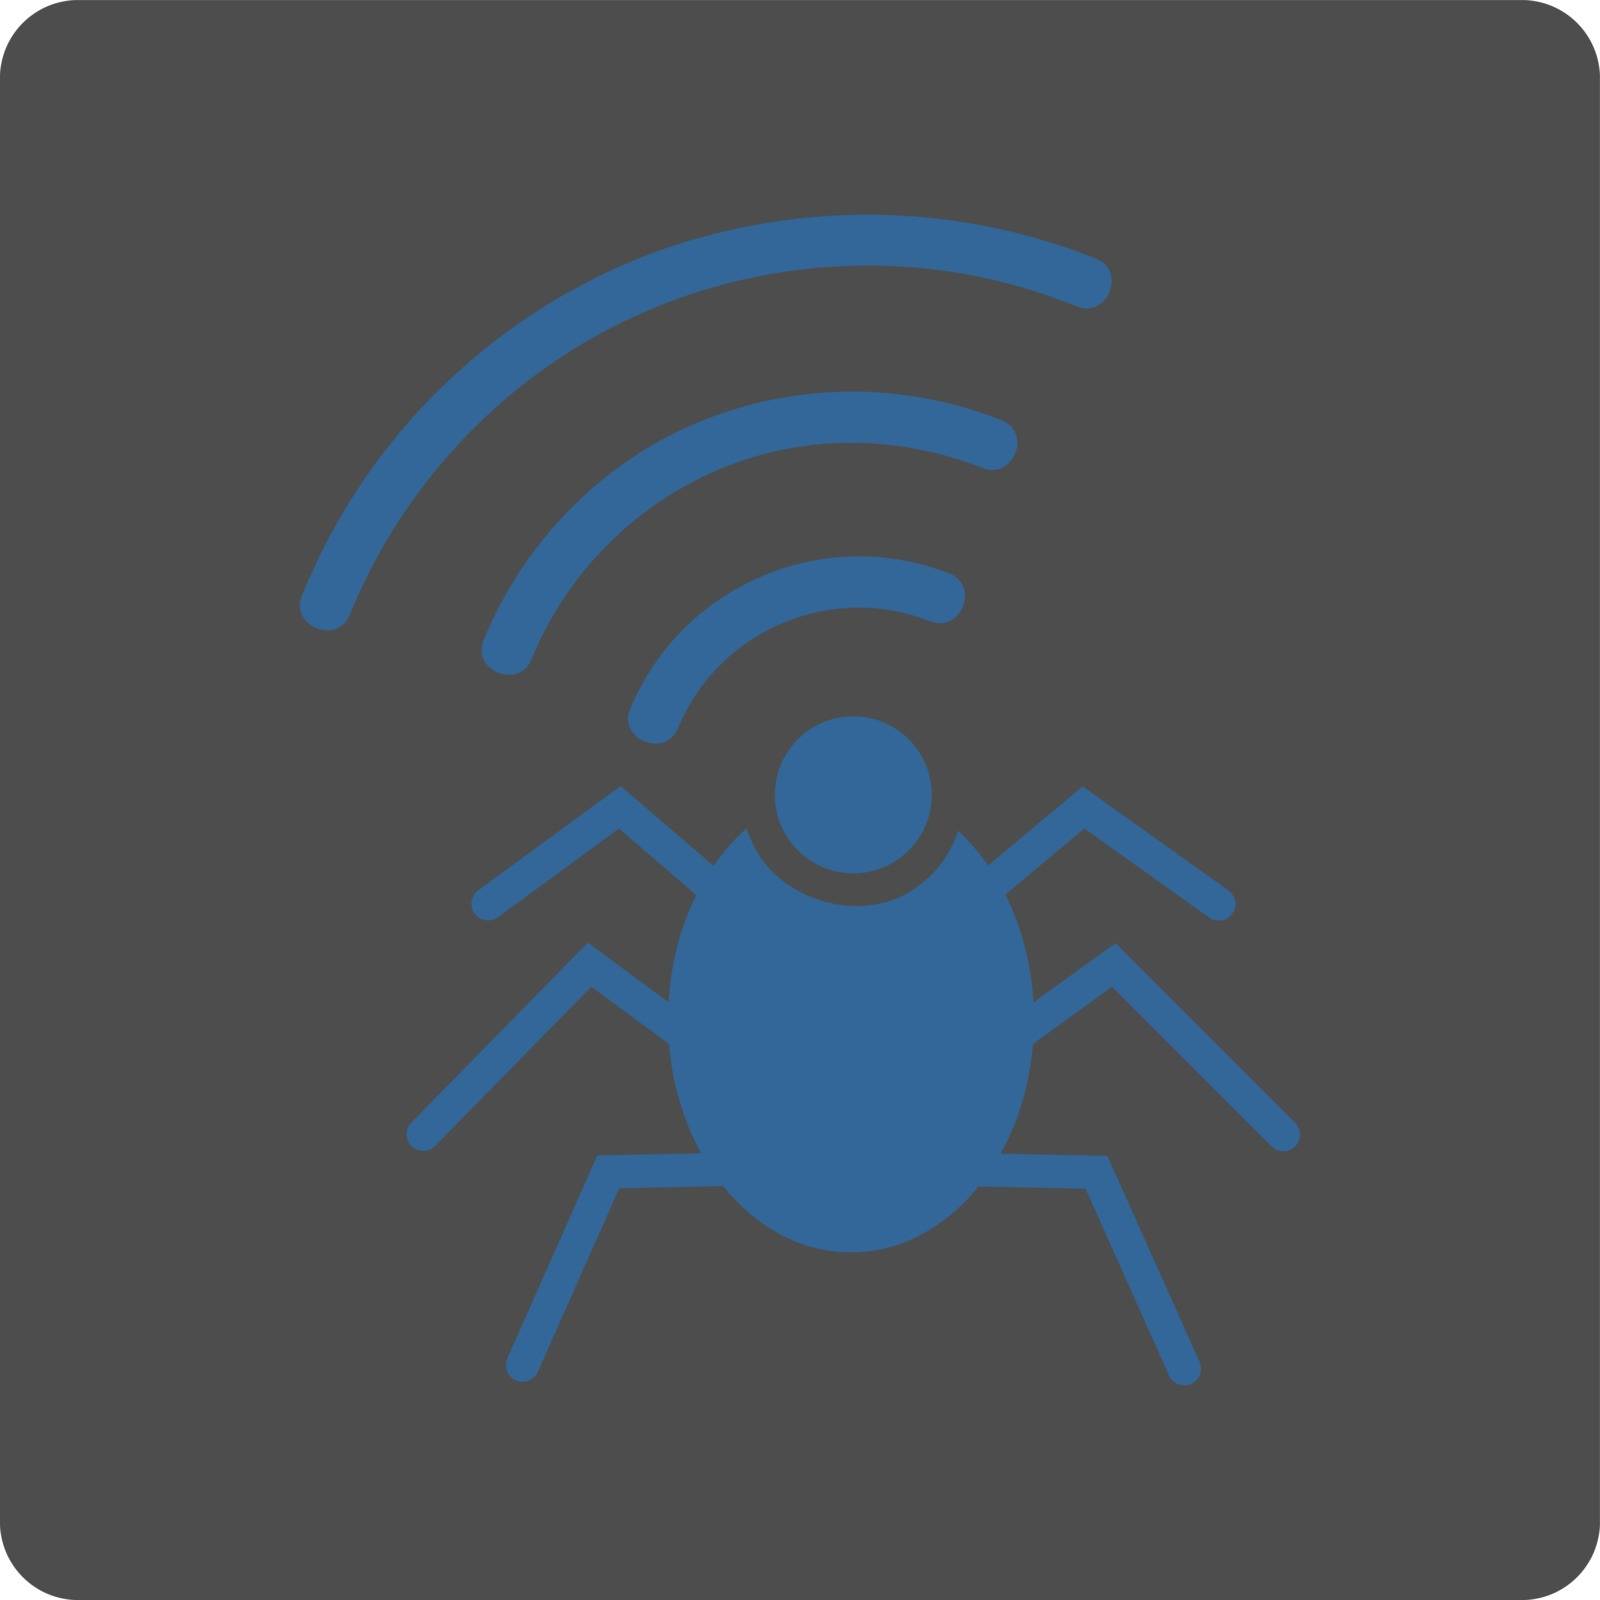 Radio spy bug icon by ahasoft